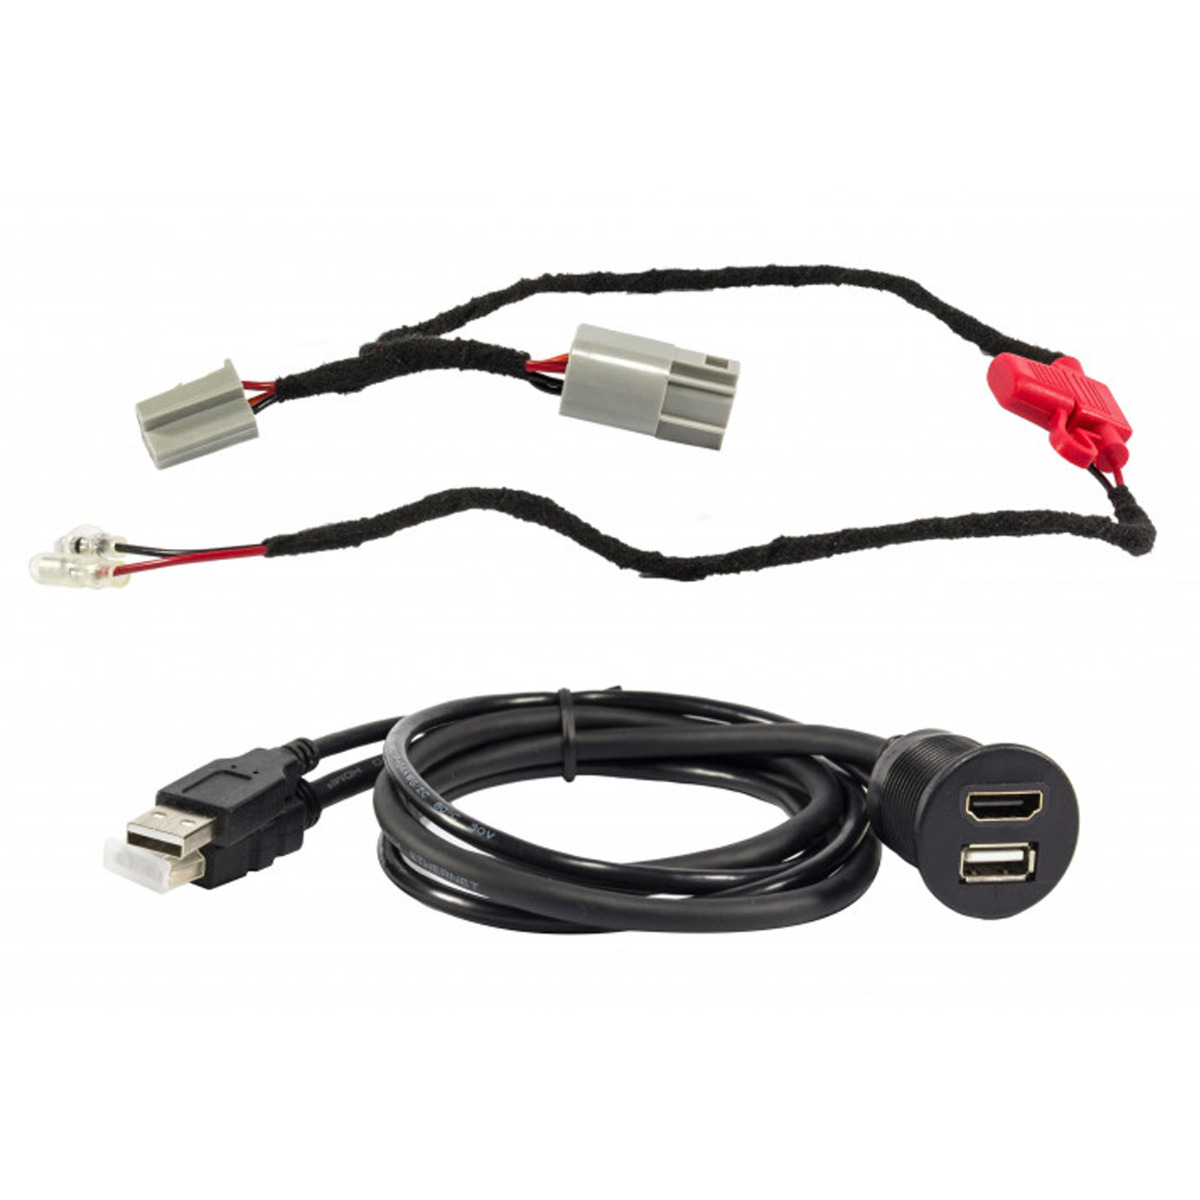 MAXXCOUNT USB+HDMI Qi-Smartphone-Ablagefach Fiat, Schwarz Volt, Citroen, 5 Peugeot